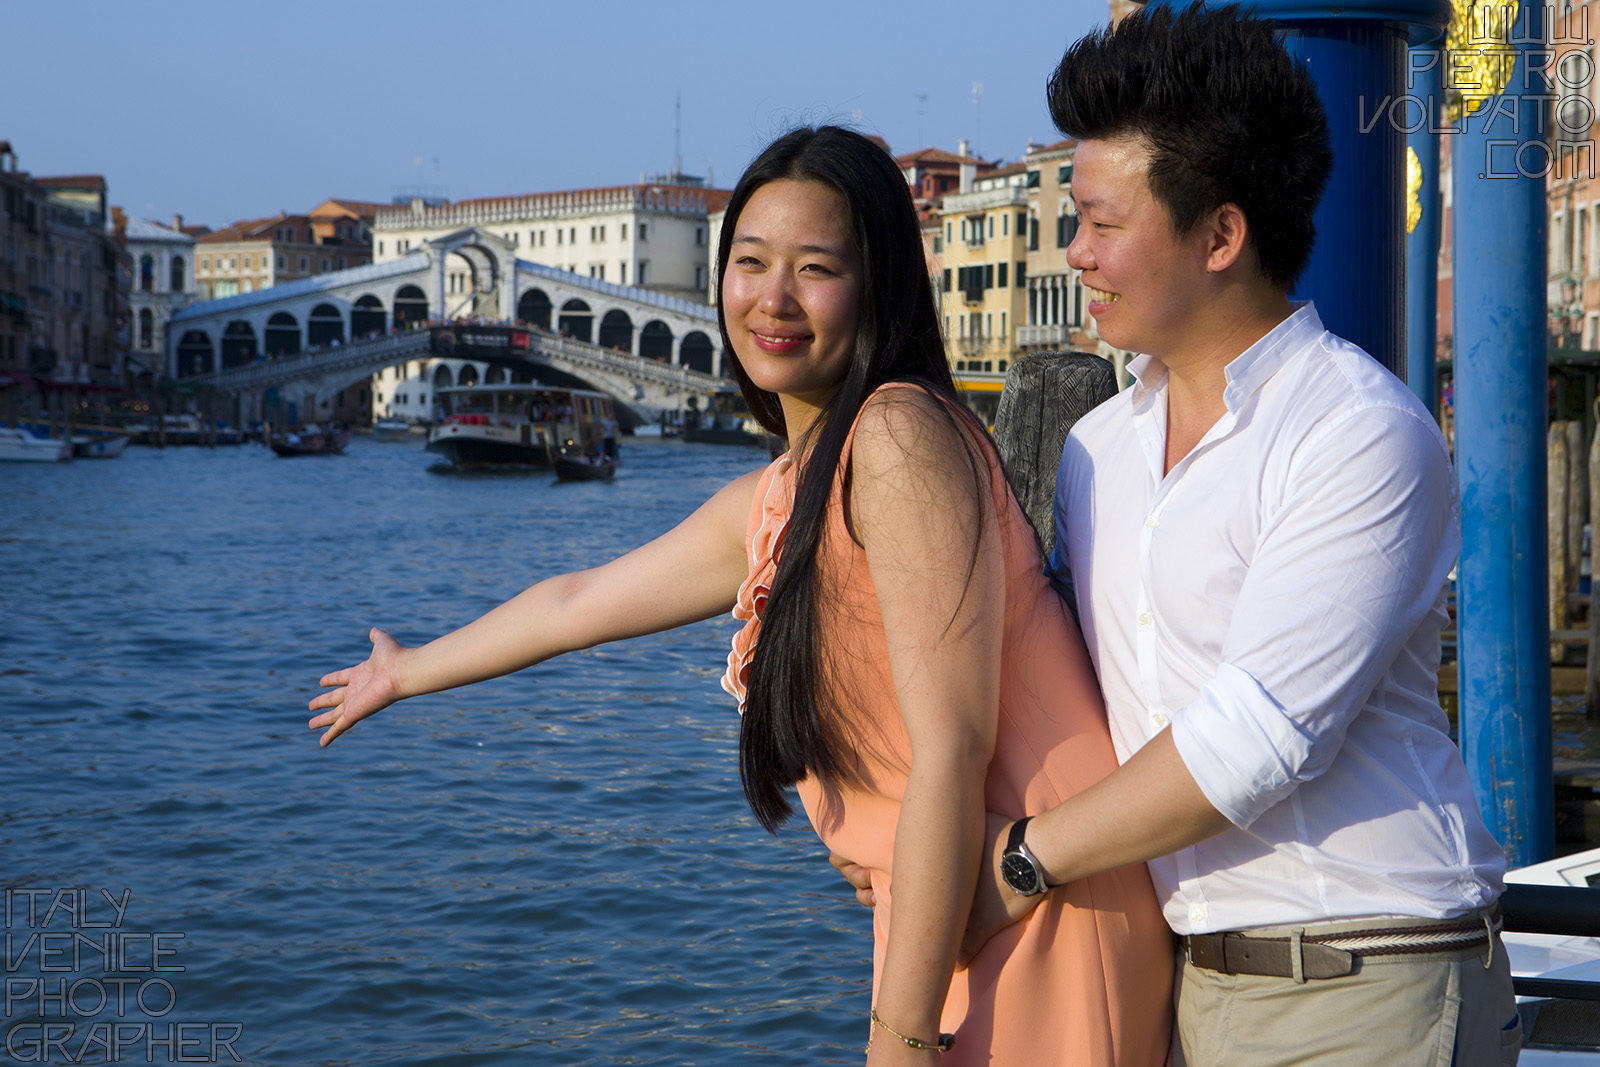 Venezia fotografo per servizio fotografico durante passeggiata romantica per coppia in luna di miele (viaggio di nozze)